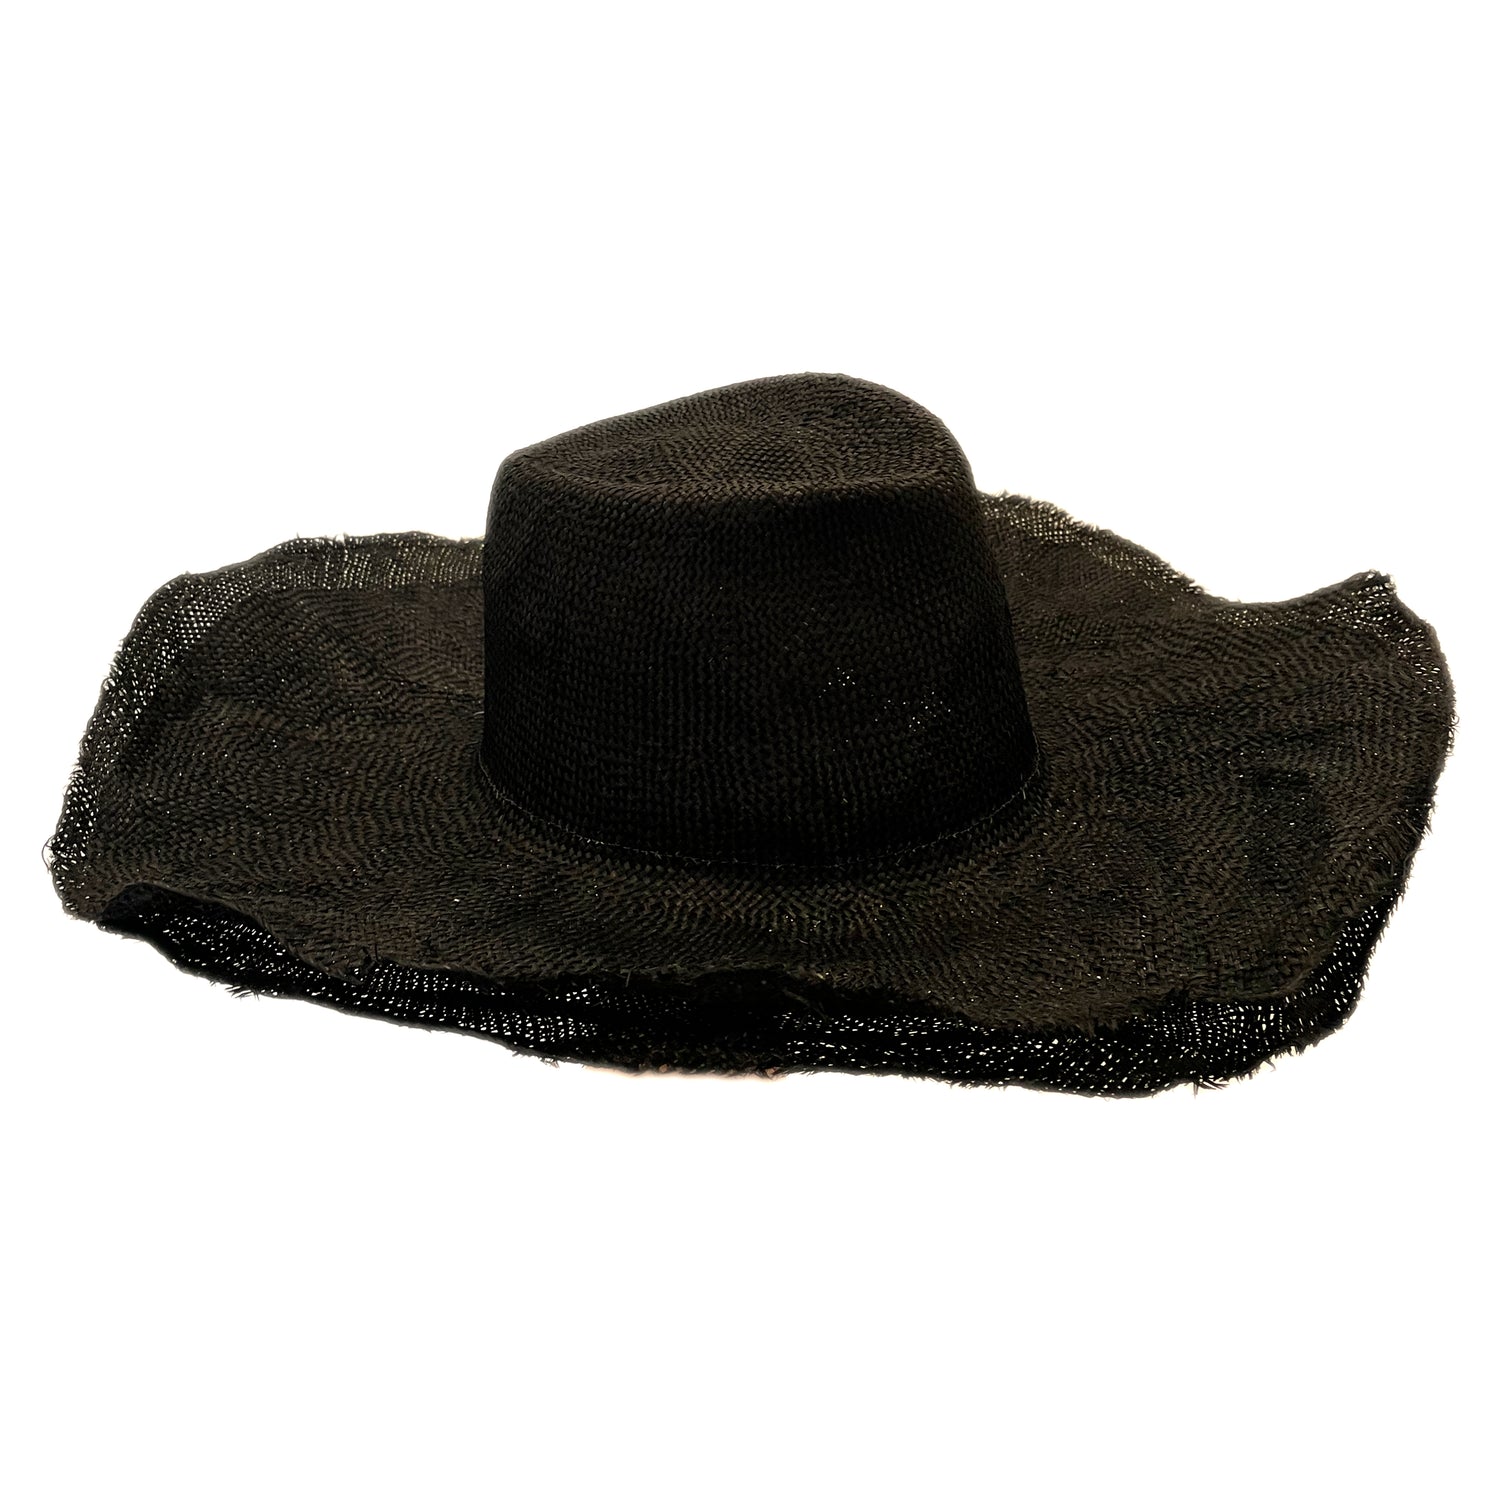 Reinhard Plank Black Straw Hat